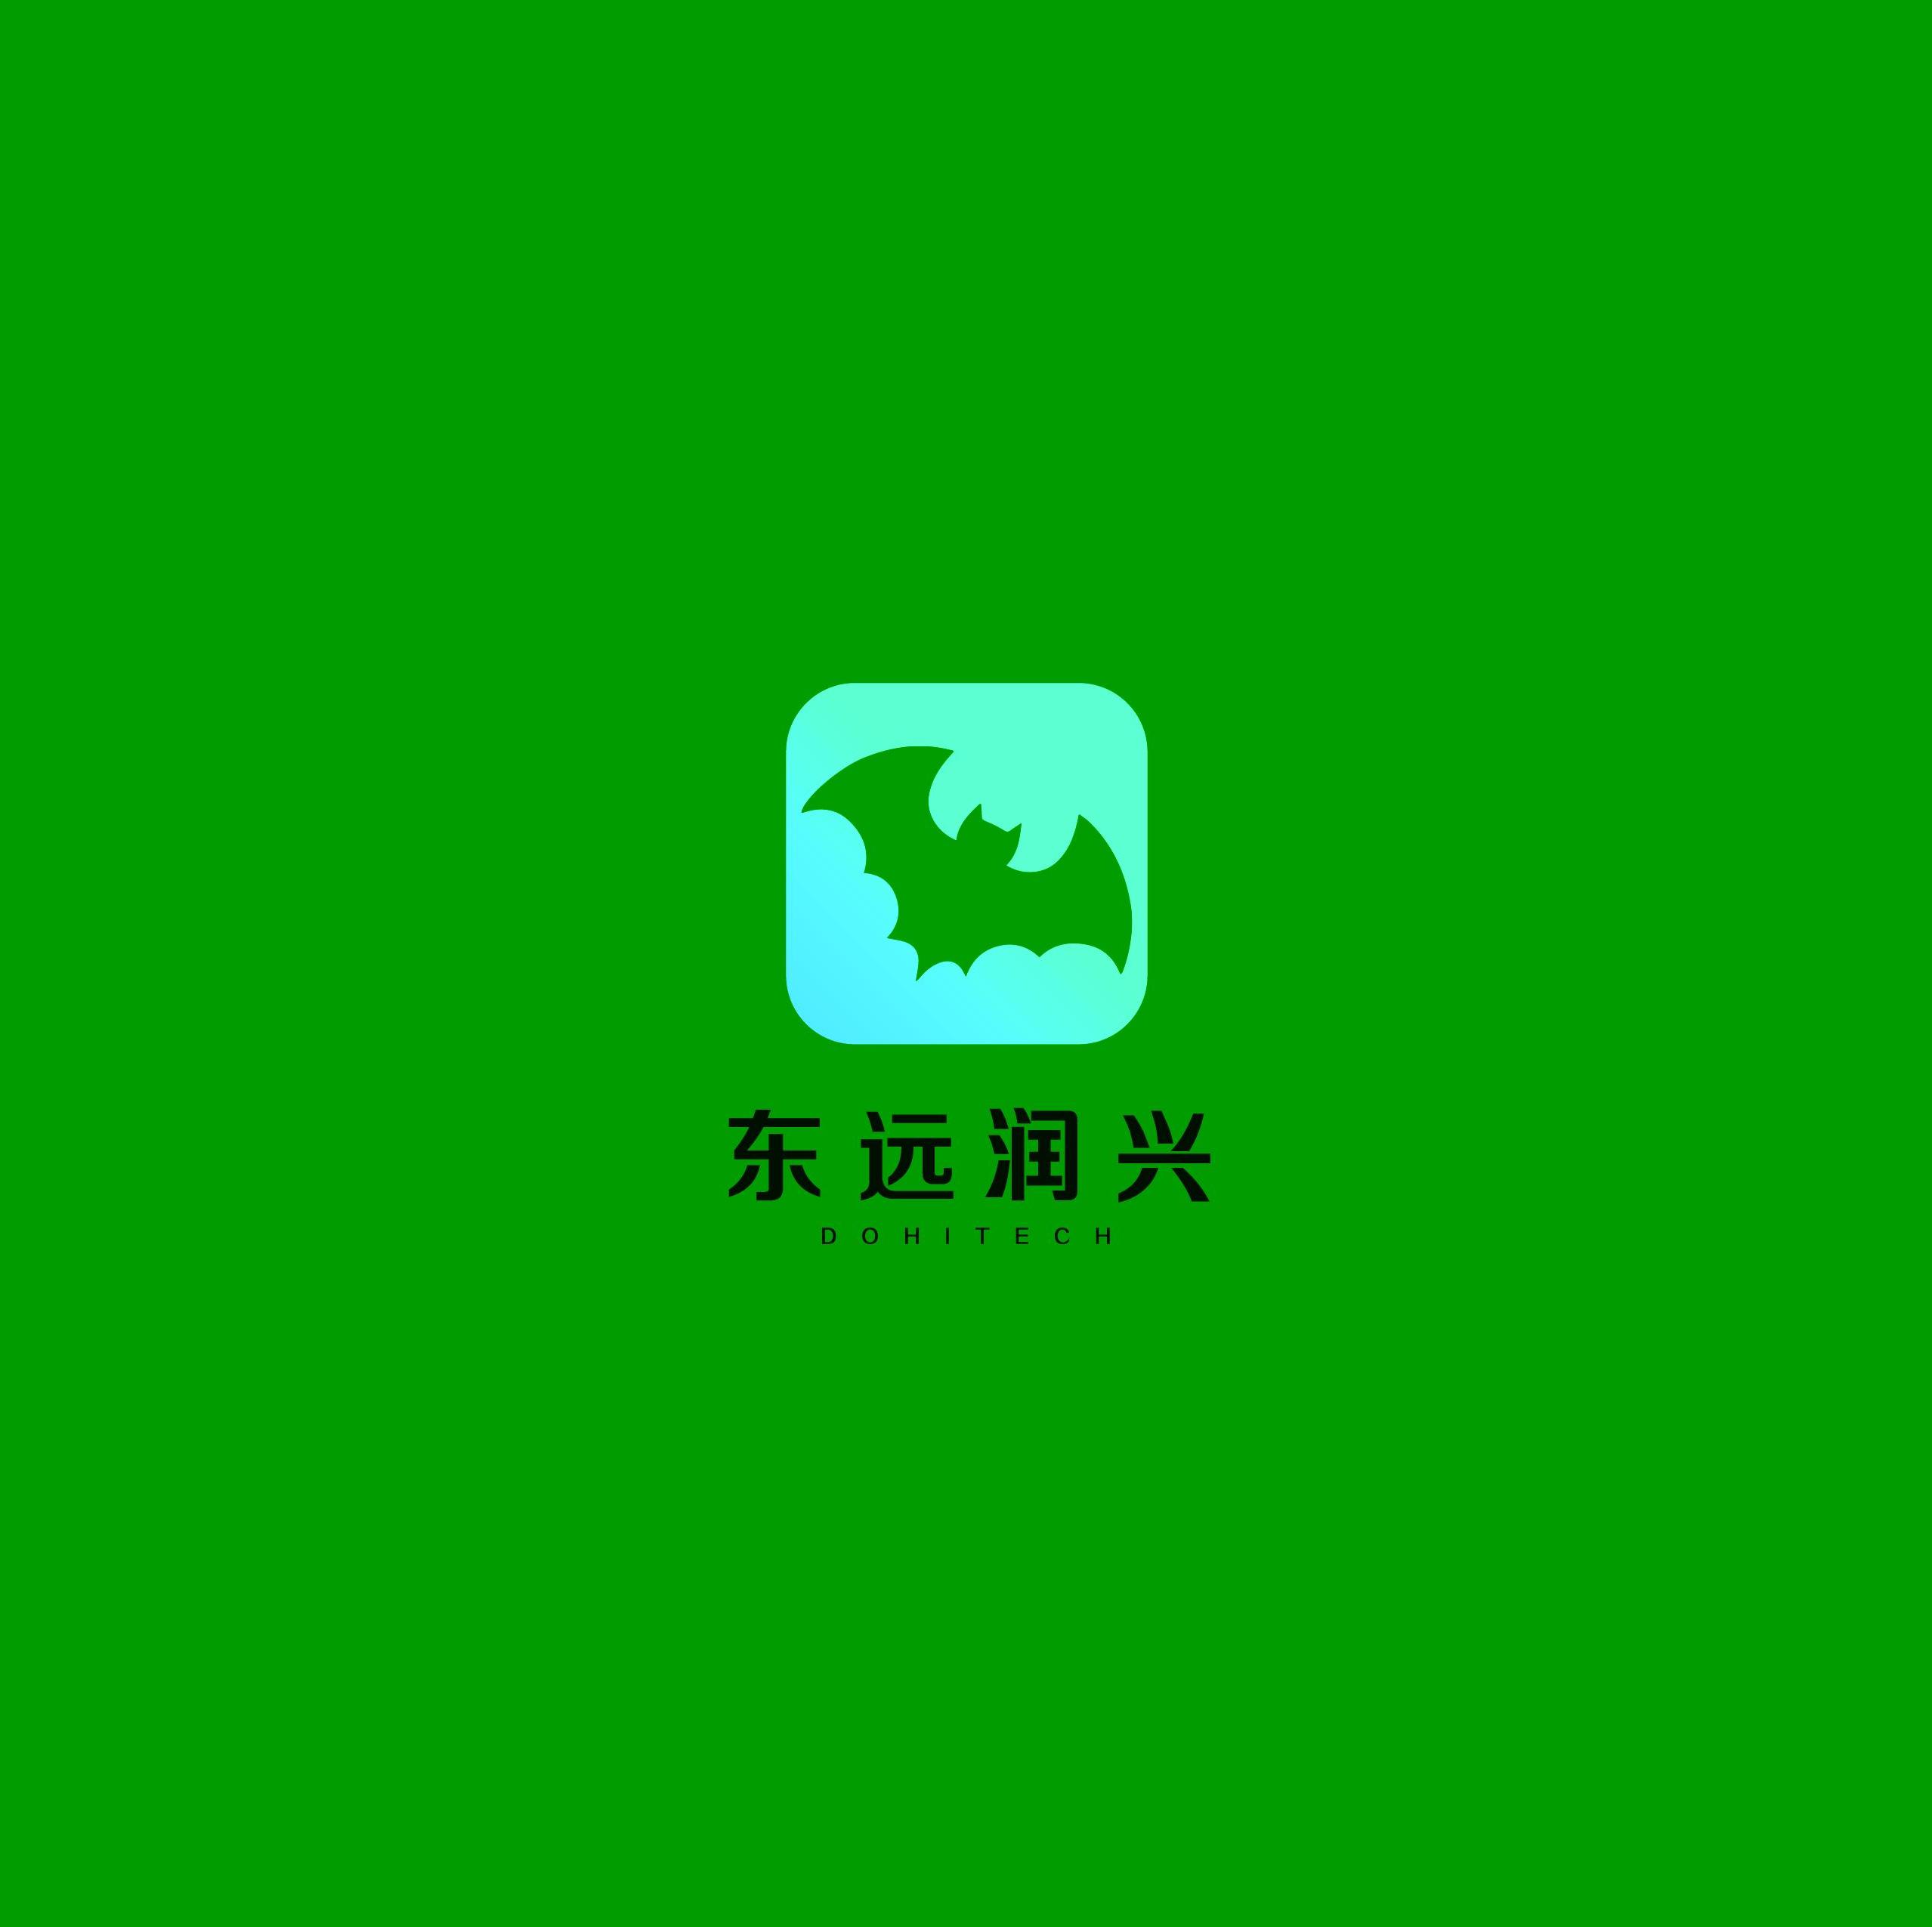 北京东远润兴科技有限公司武汉分公司